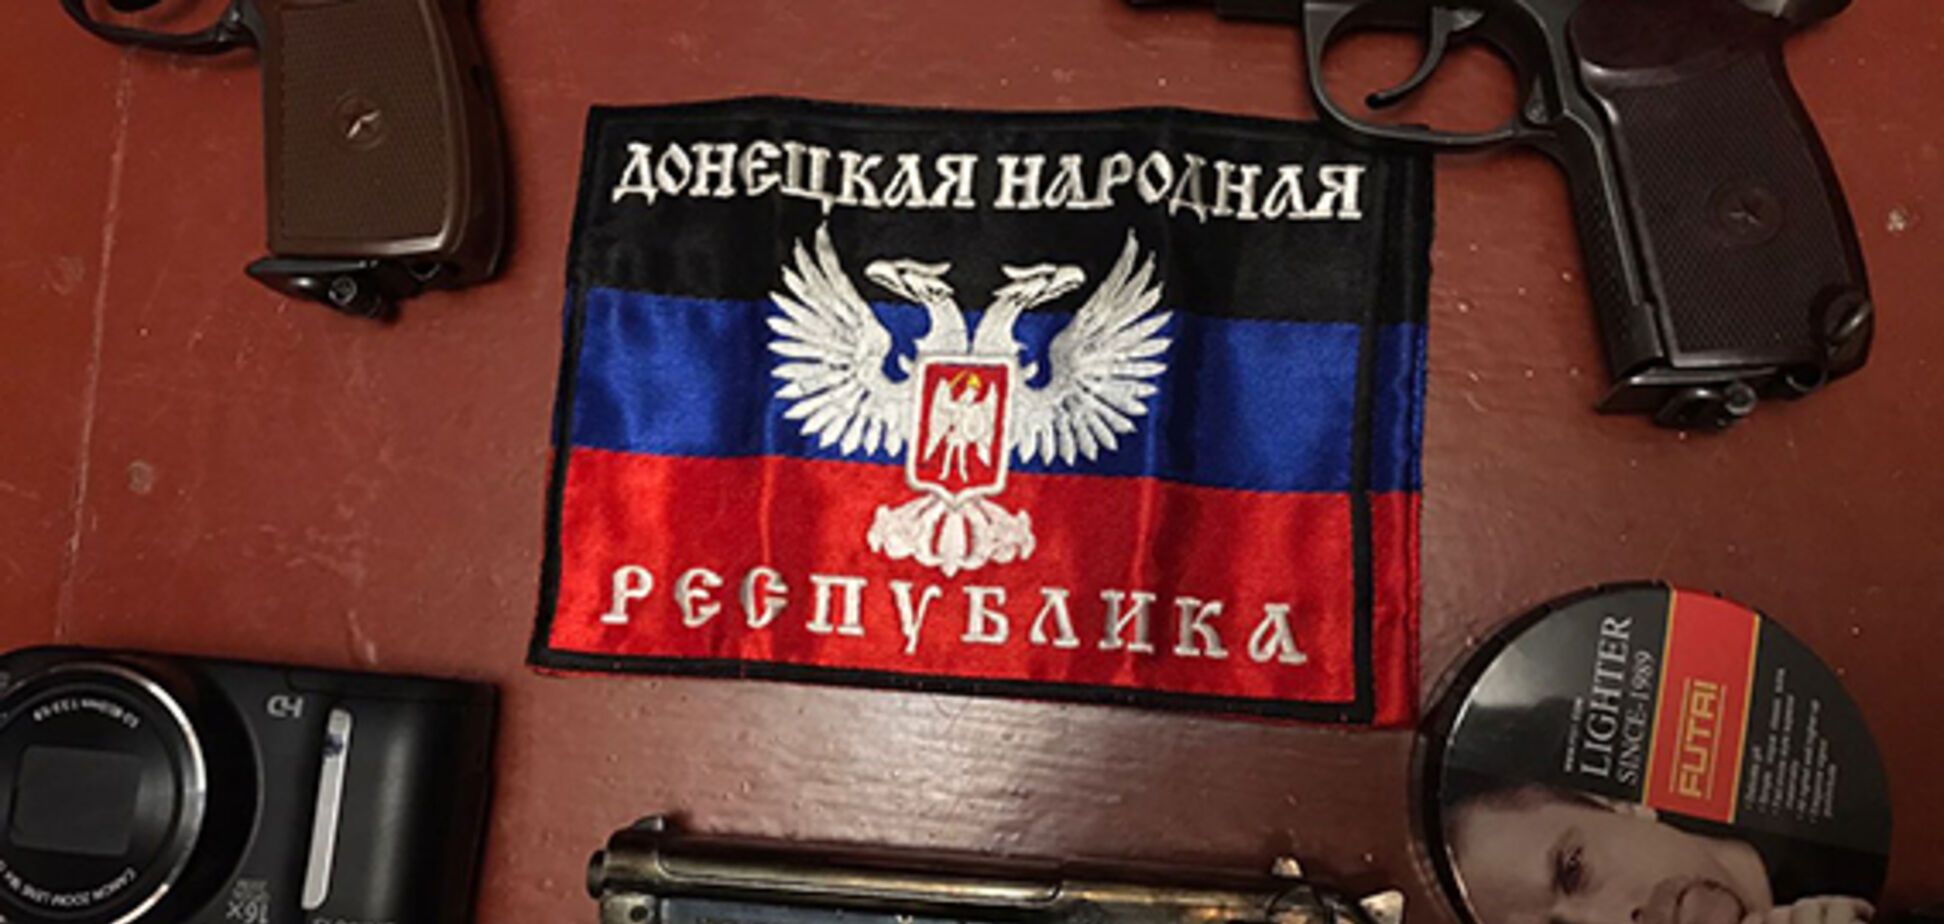 Гранаты и взрывчатка: на Днепропетровщине у 'адепта ДНР' изъяли целый арсенал